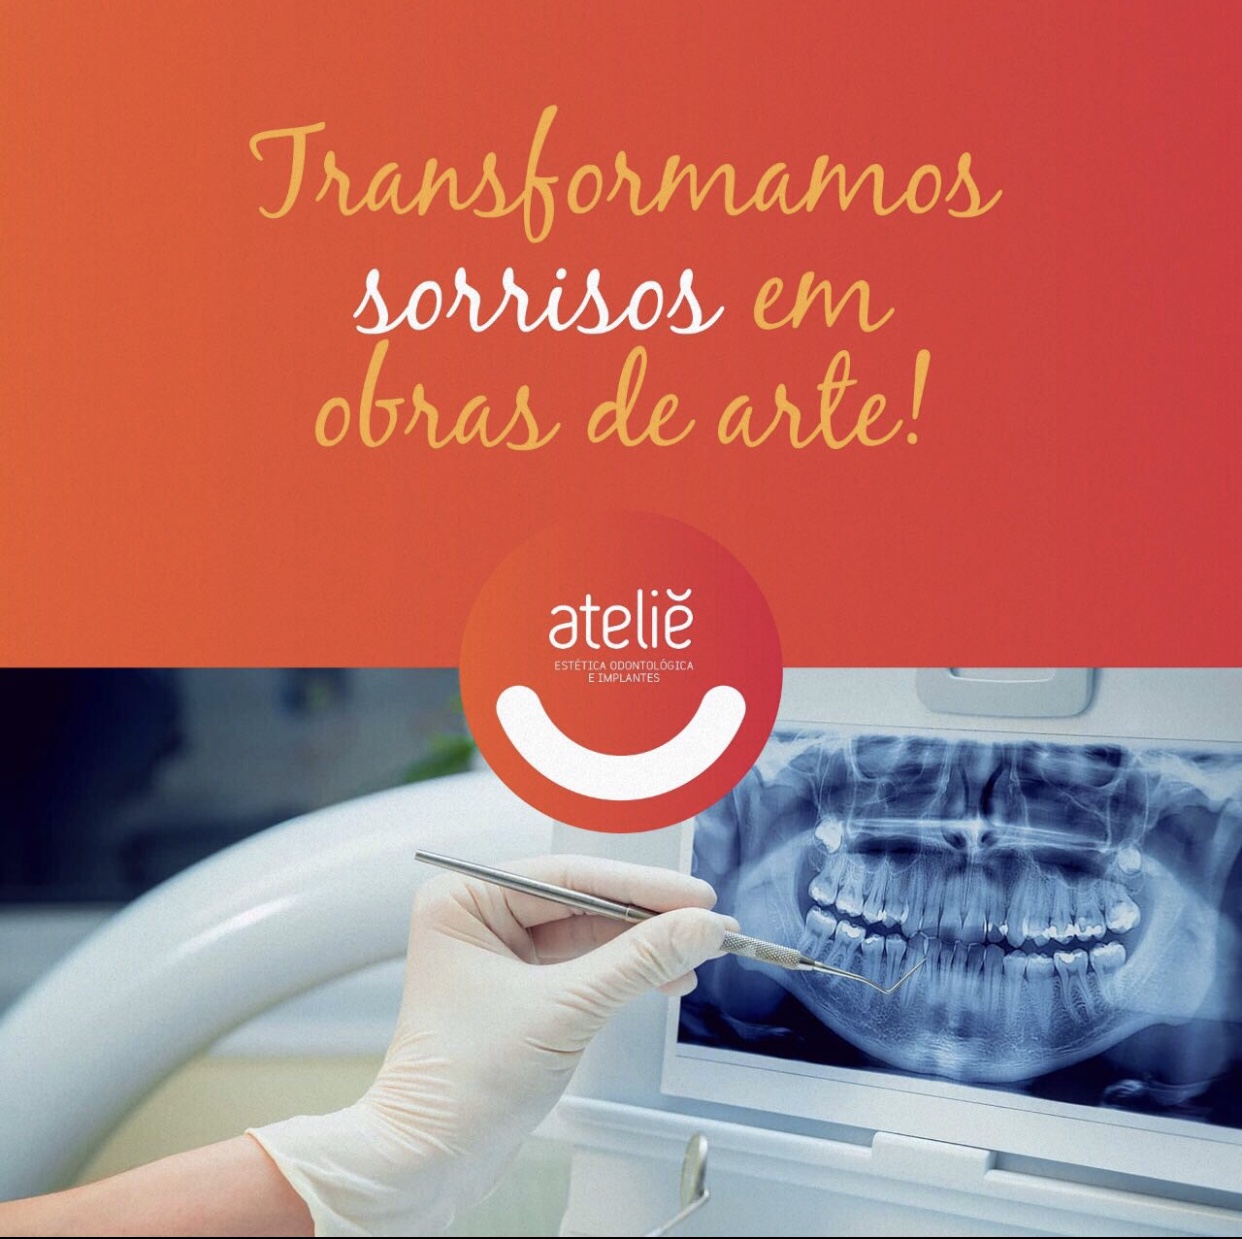 ATELIE ESTÉTICA ODONTOLÓGICA E IMPLANTES - Cirurgiões-Dentistas - Endodontia - Montes Claros, MG